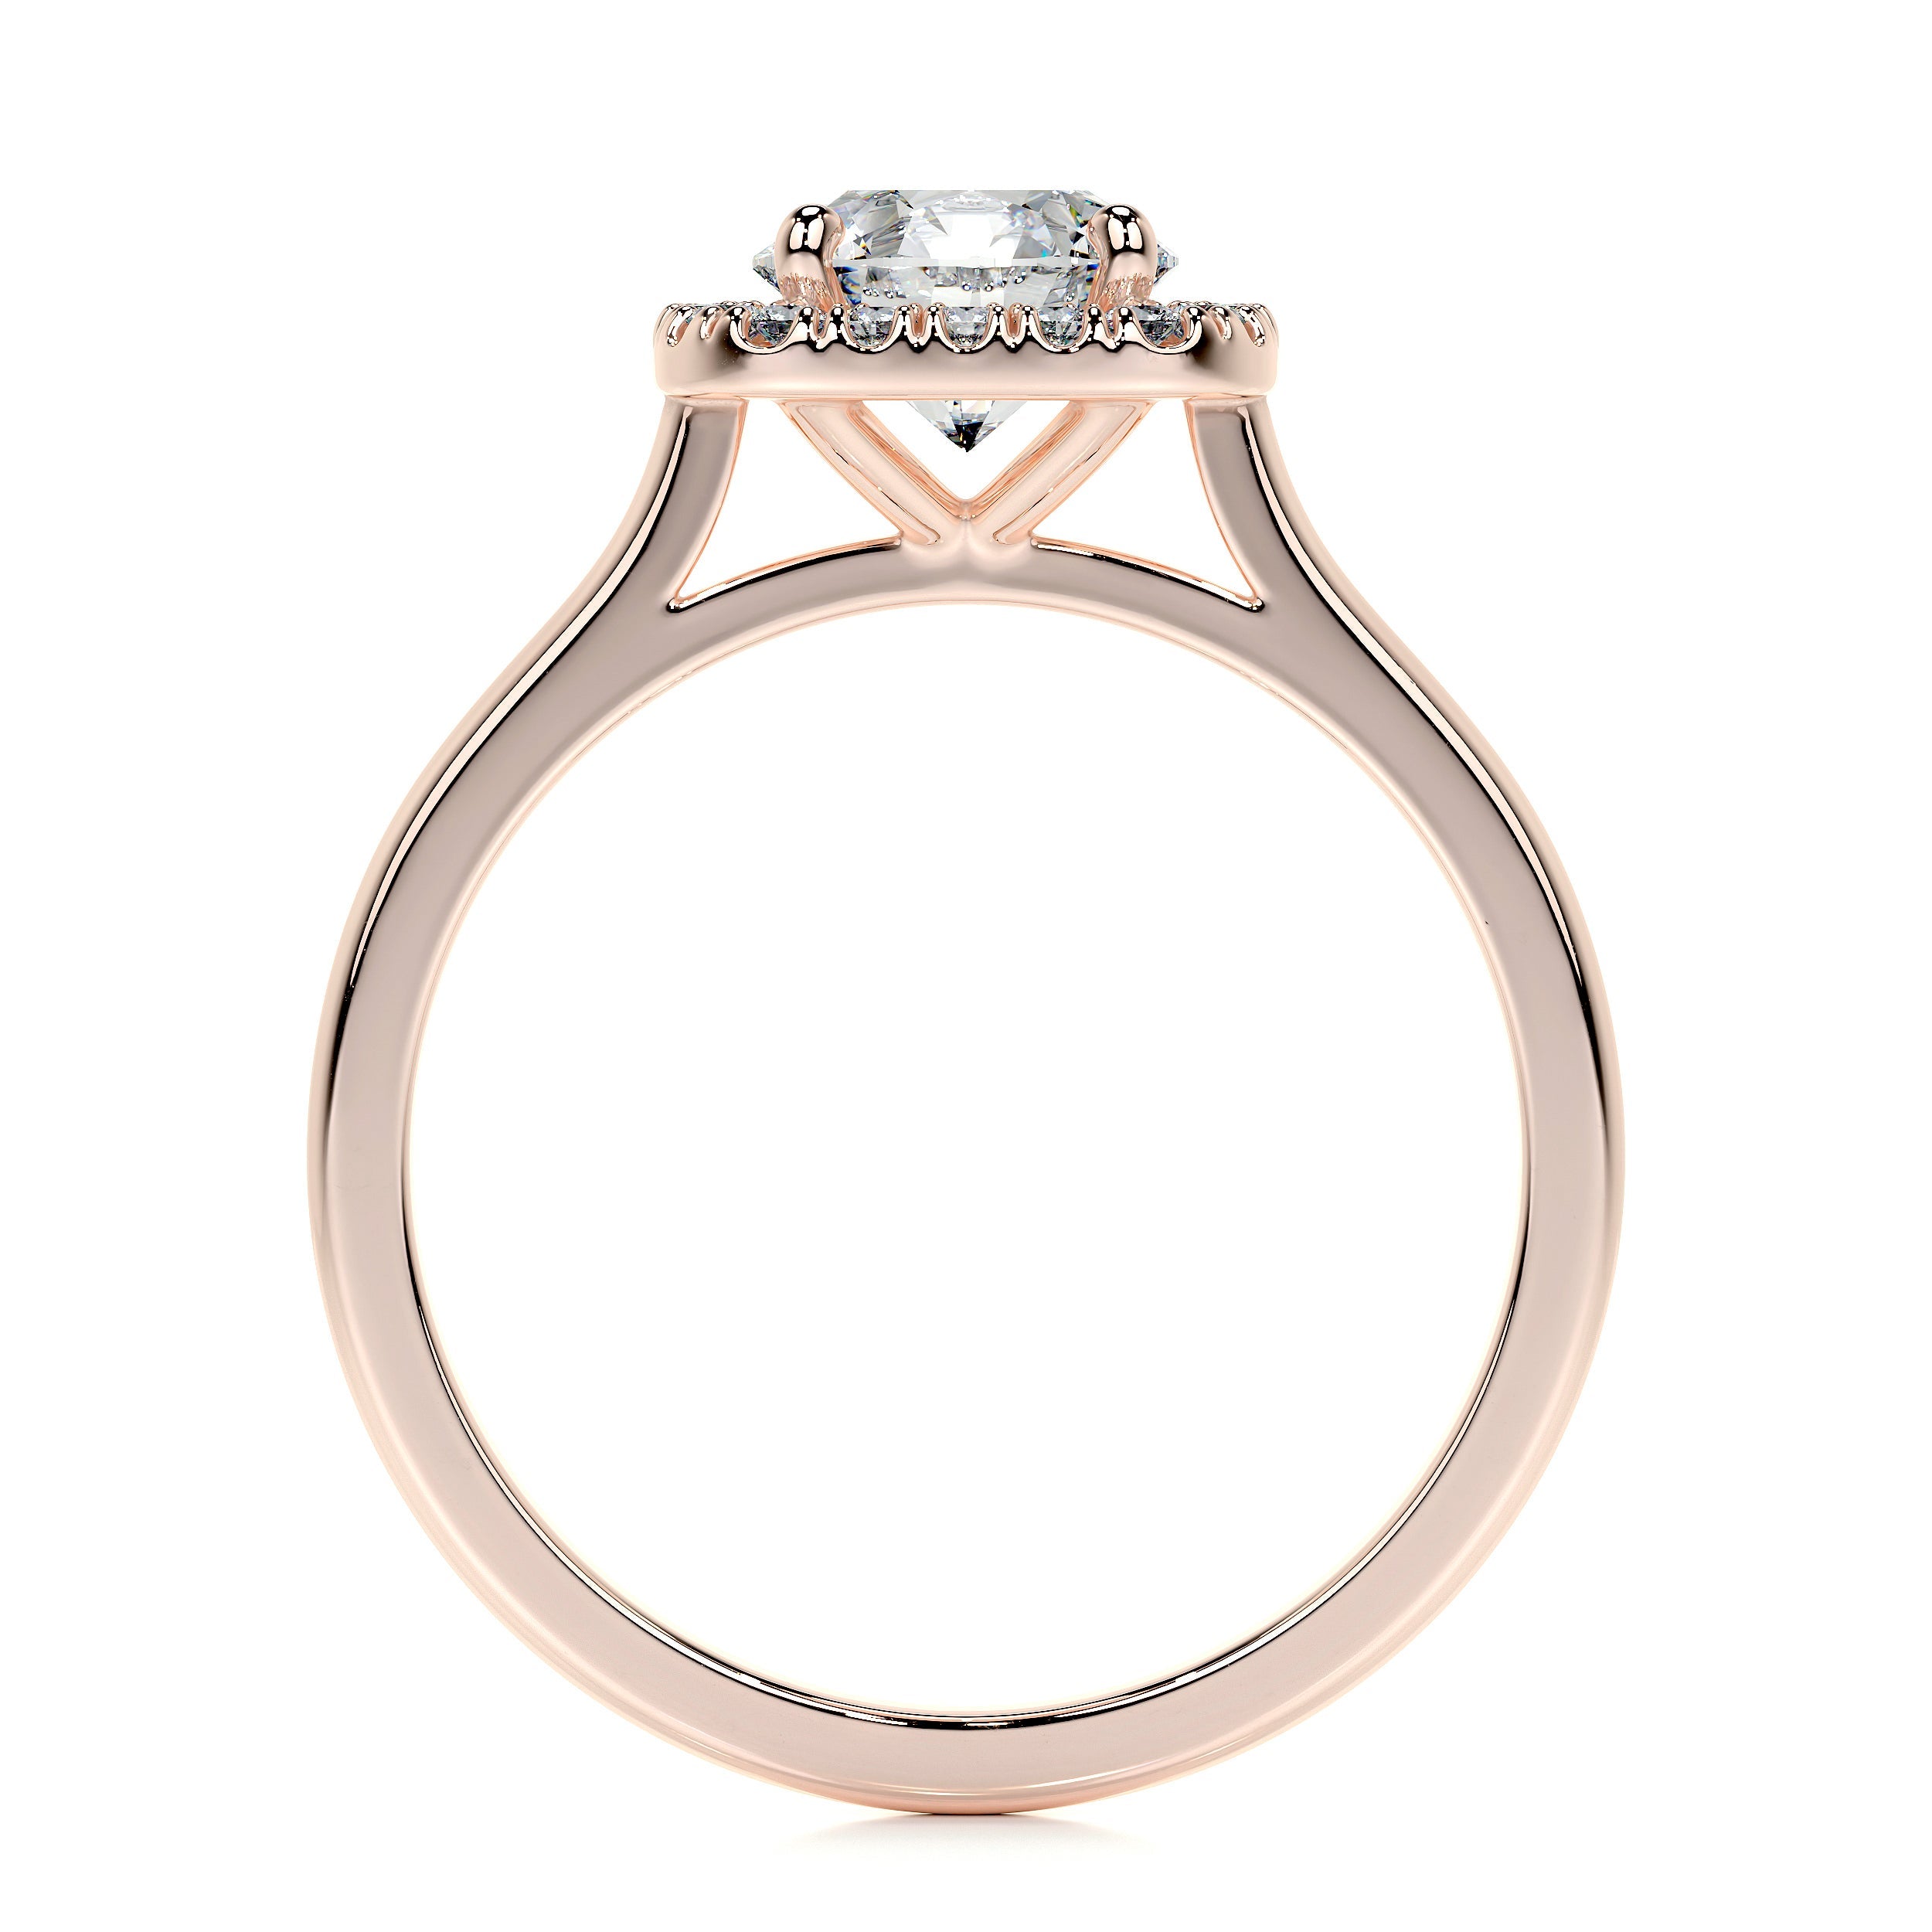 Claudia Lab Grown Diamond Ring   (1.15 Carat) -14K Rose Gold